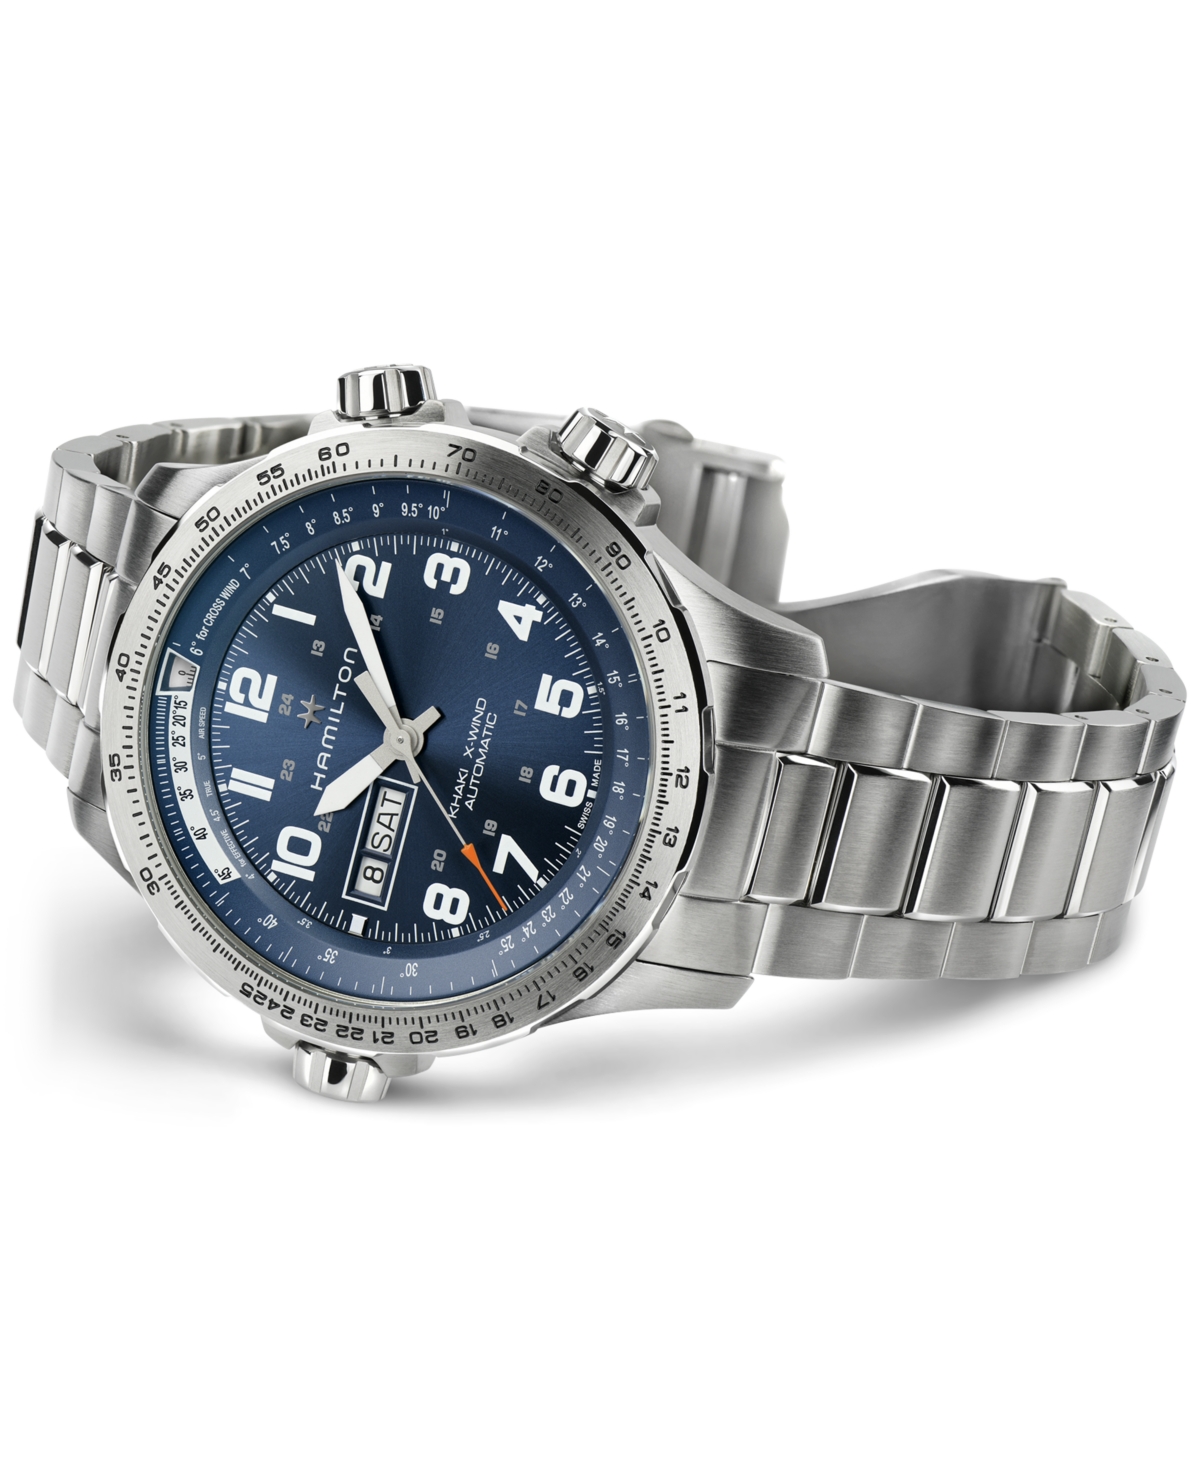 Shop Hamilton Men's Swiss Khaki X-wind Aviation Stainless Steel Bracelet Watch 45mm